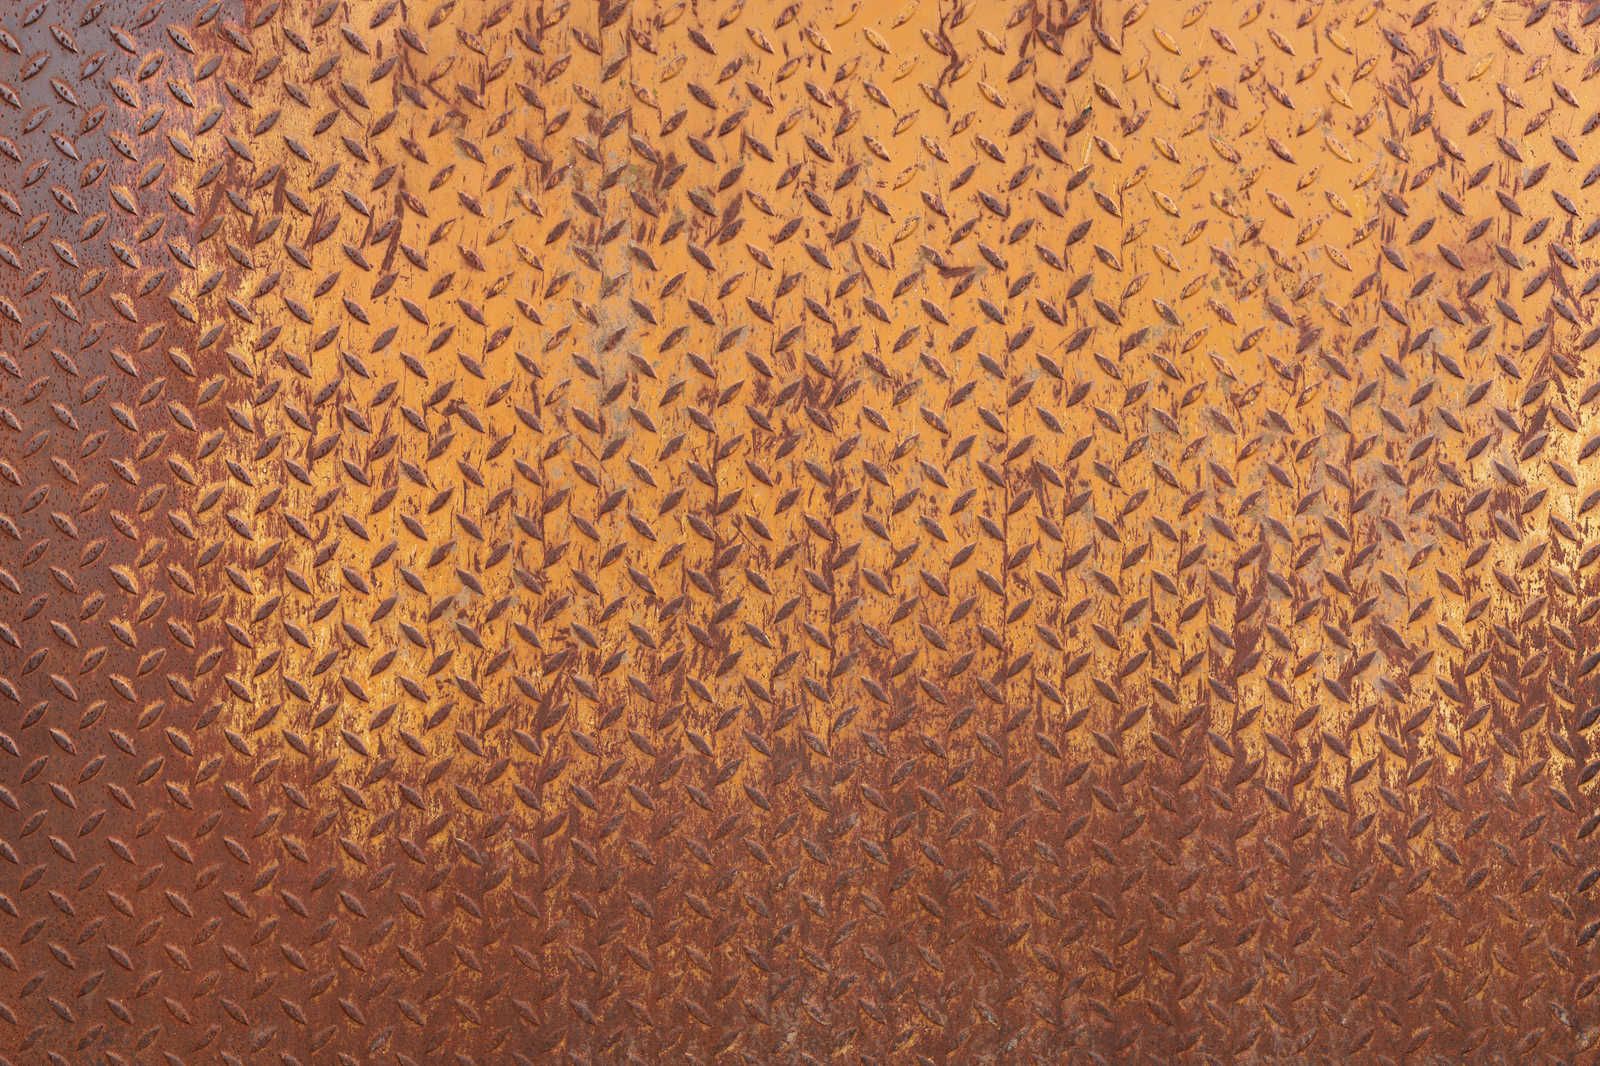             Toile métal Plaque acier rouille avec motif diamant - 0,90 m x 0,60 m
        